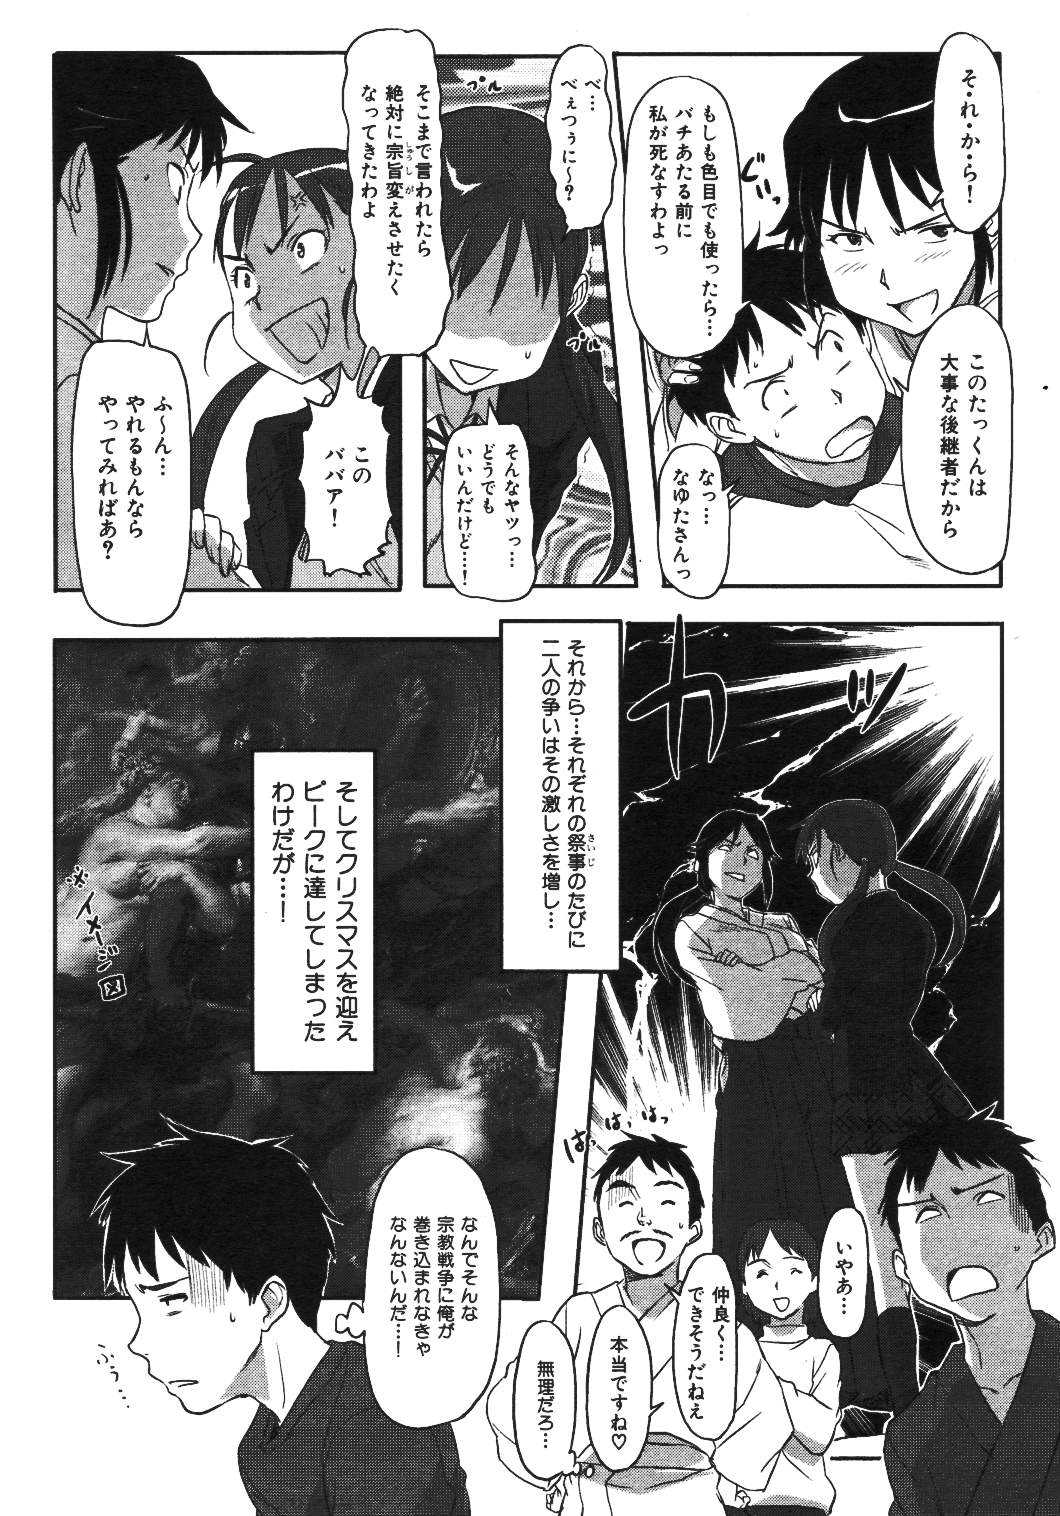 [2007.01.15]Comic Kairakuten Beast Volume 15 COMIC快楽天BEAST VOL.15